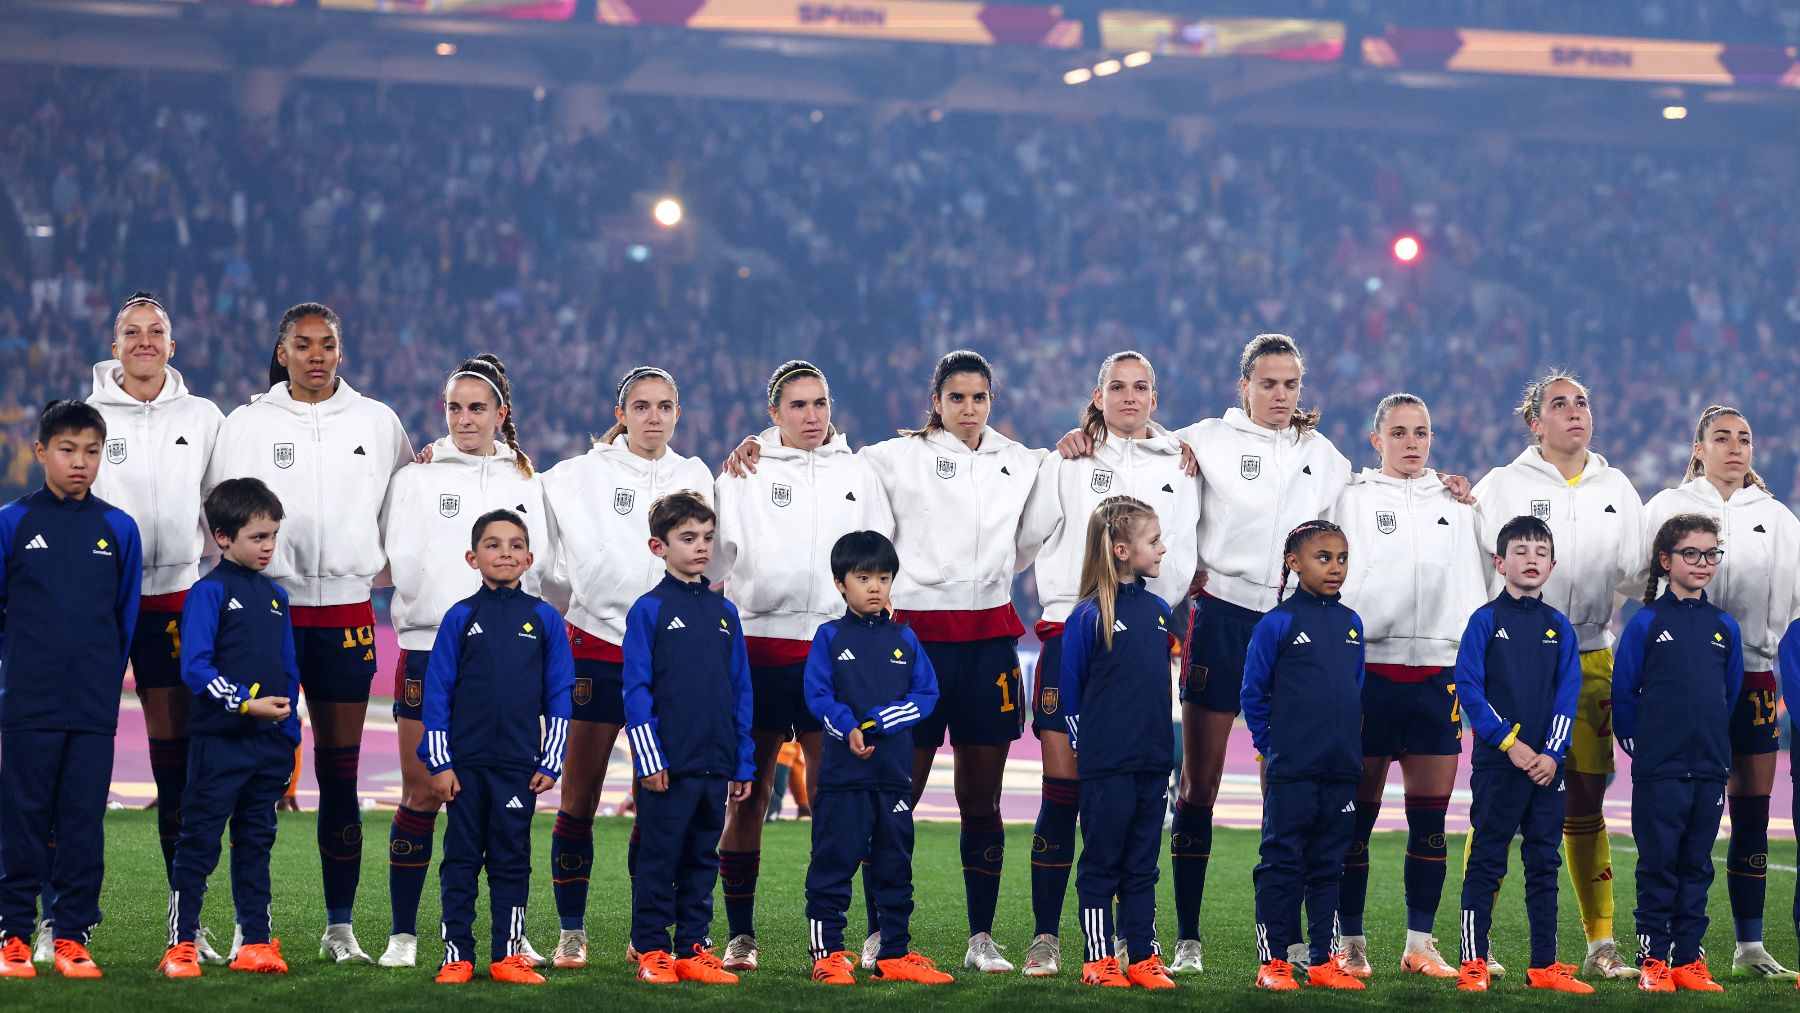 La selección española durante el himno (AFP)